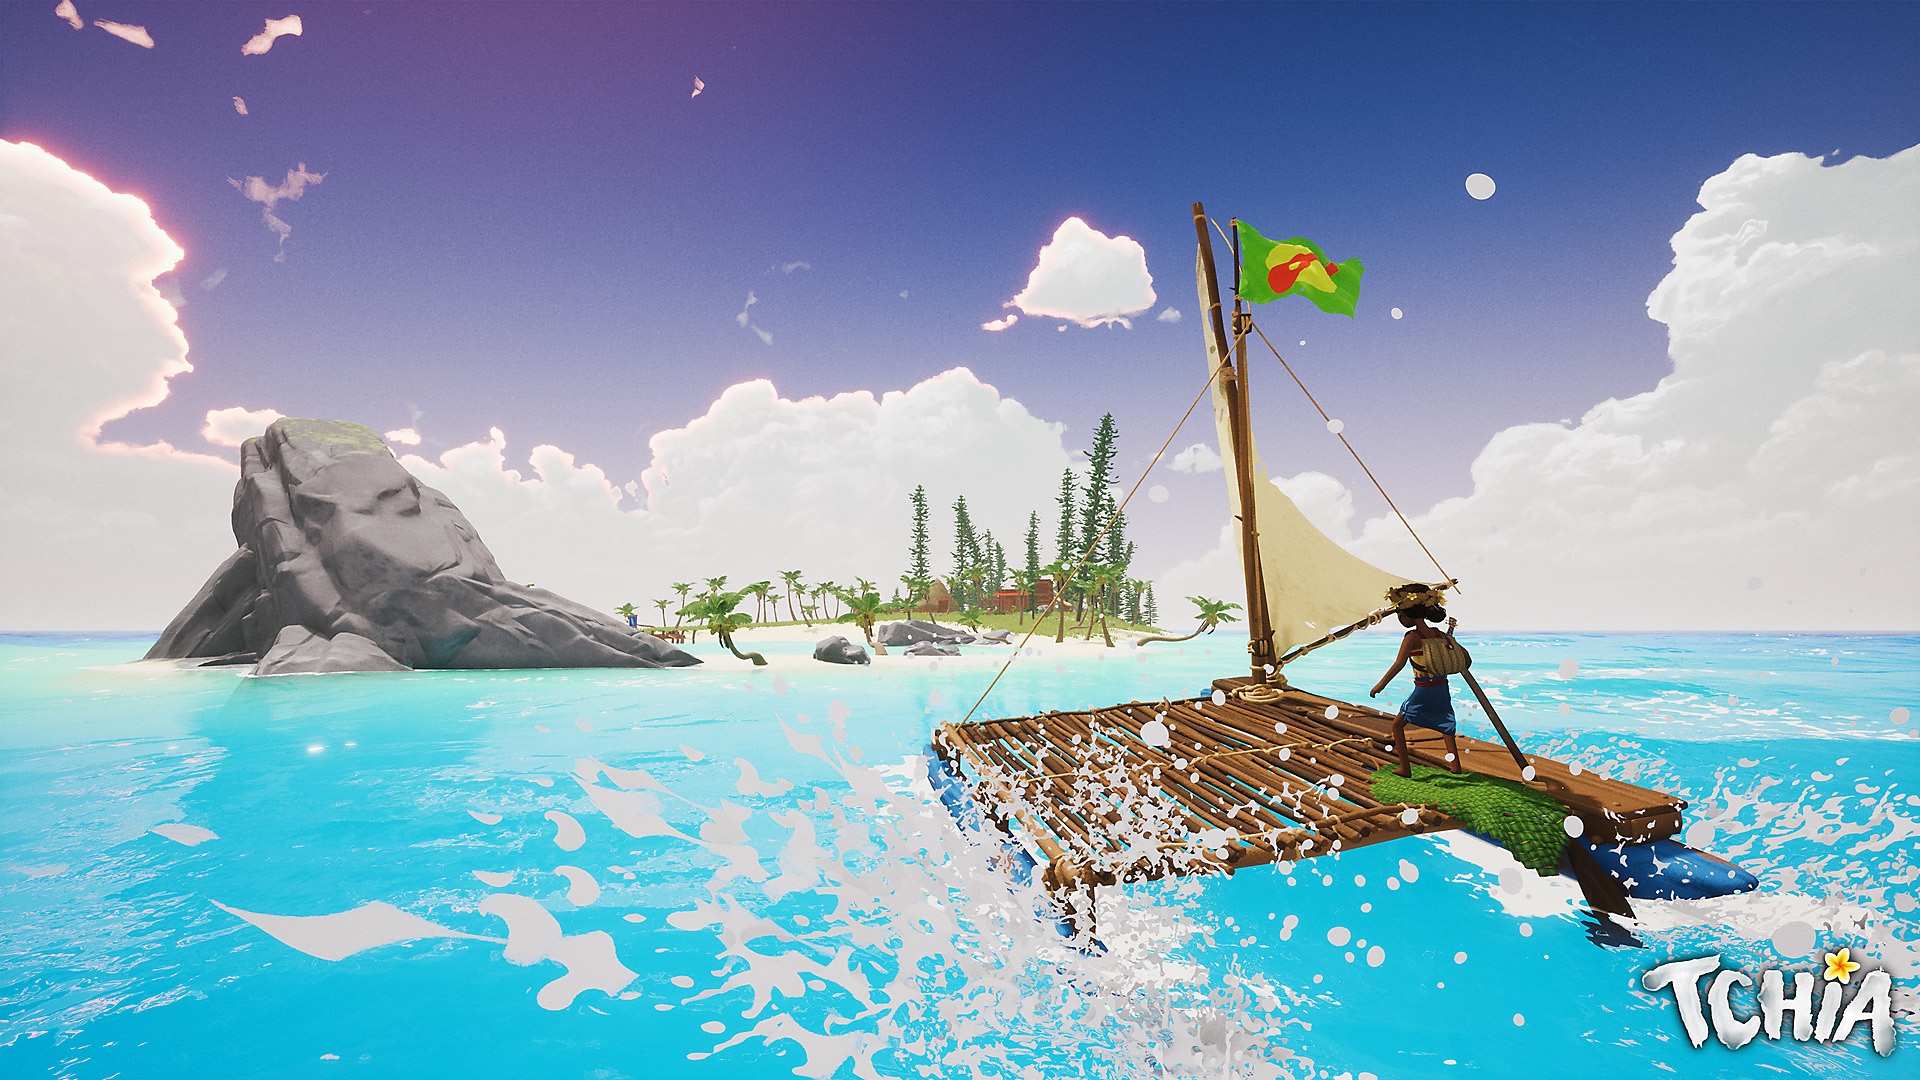 Snimka zaslona iz igre Tchia prikazuje glavnu junakinju kako plovi na splavi prema otoku